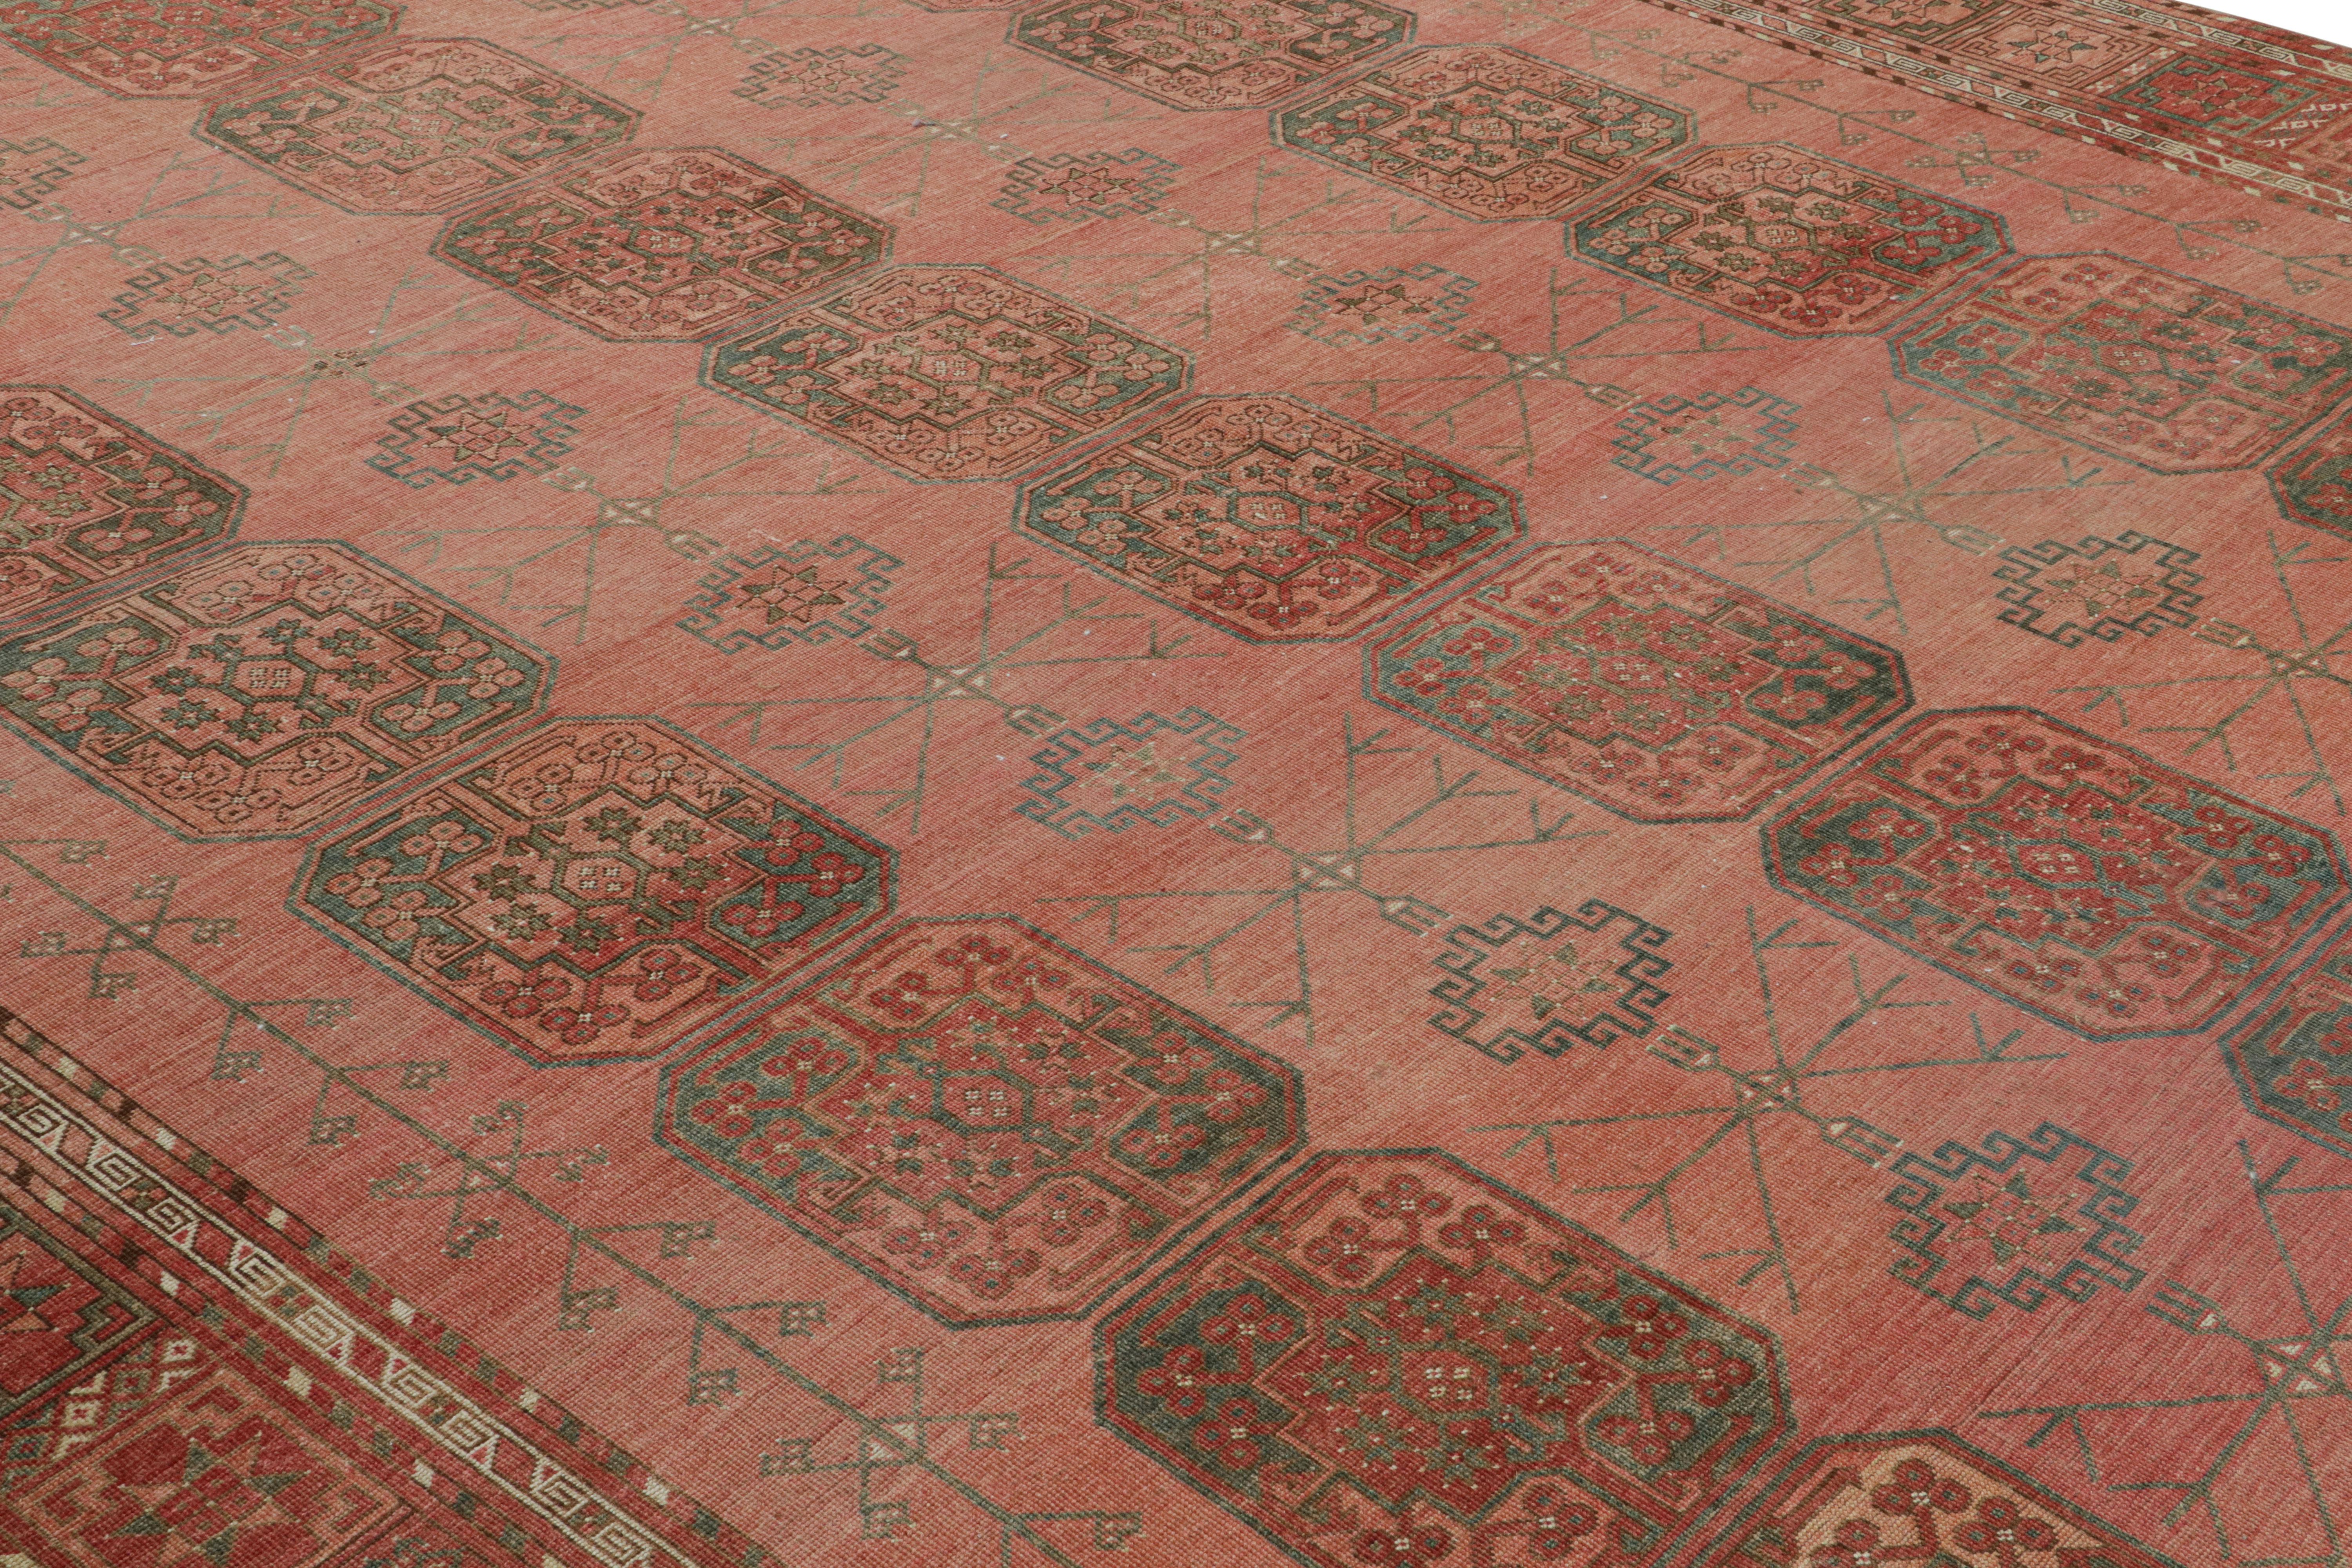 Noué à la main en laine, originaire de Turquie vers 1950-1960, ce tapis Ersari vintage 10x15 provient de la même provenance, une sous-tribu du peuple turkmène, souvent connue pour ses motifs de tapis tribaux plus distincts. 

Sur le Design : 

Les